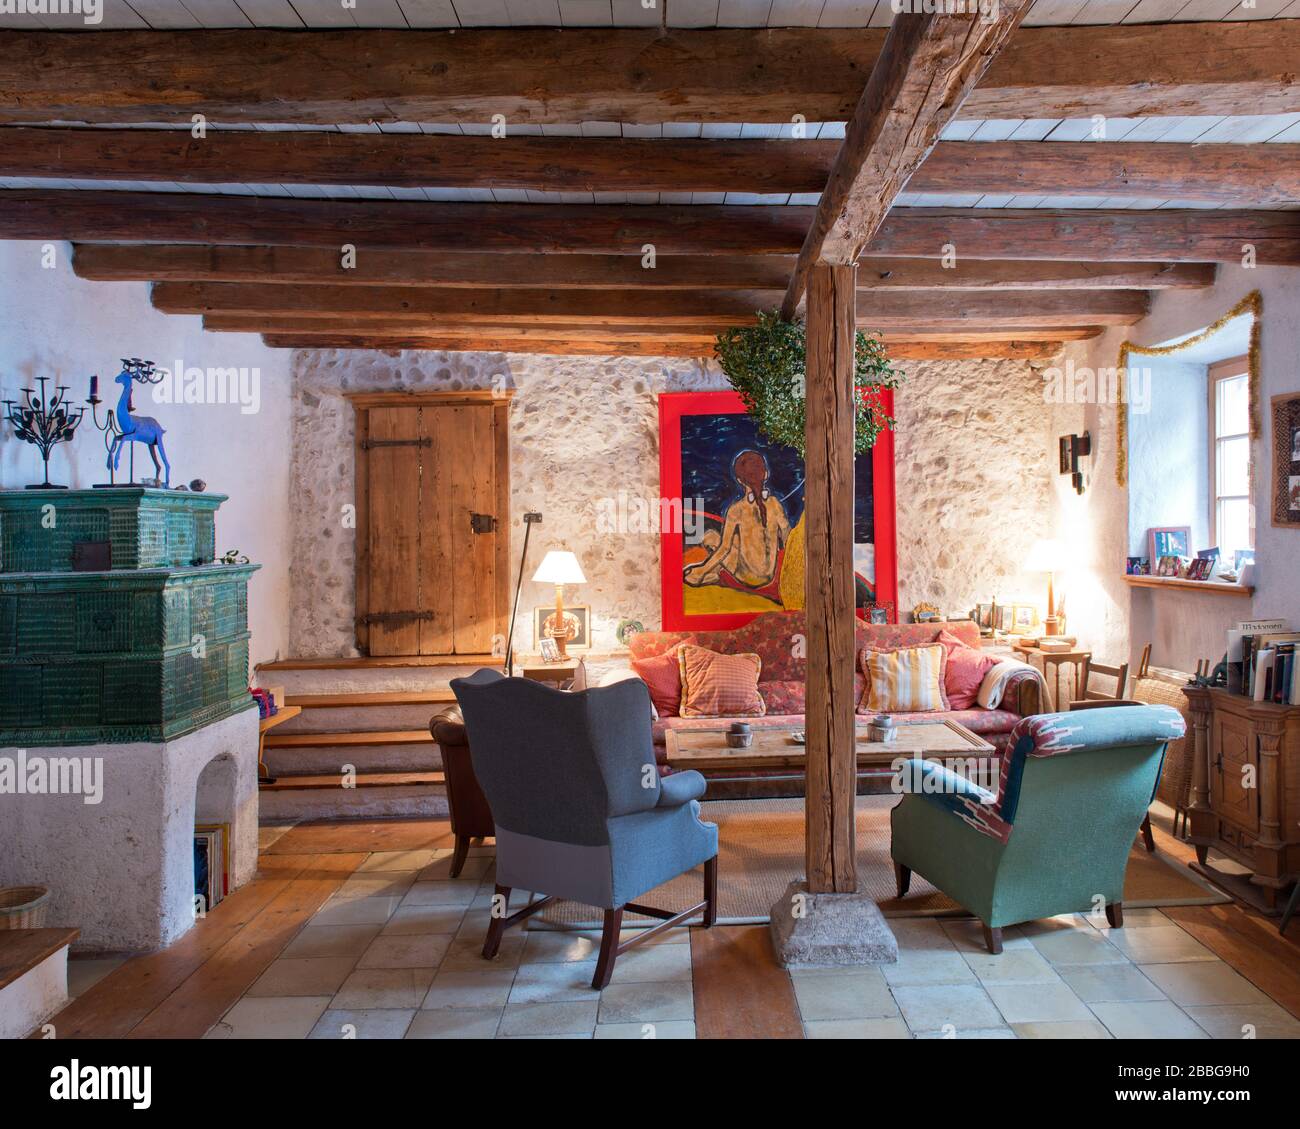 Wohnzimmer im Landhausstil mit grünem Kachelofen, Sofa, Holztramen und Ölgemälde Stockfoto